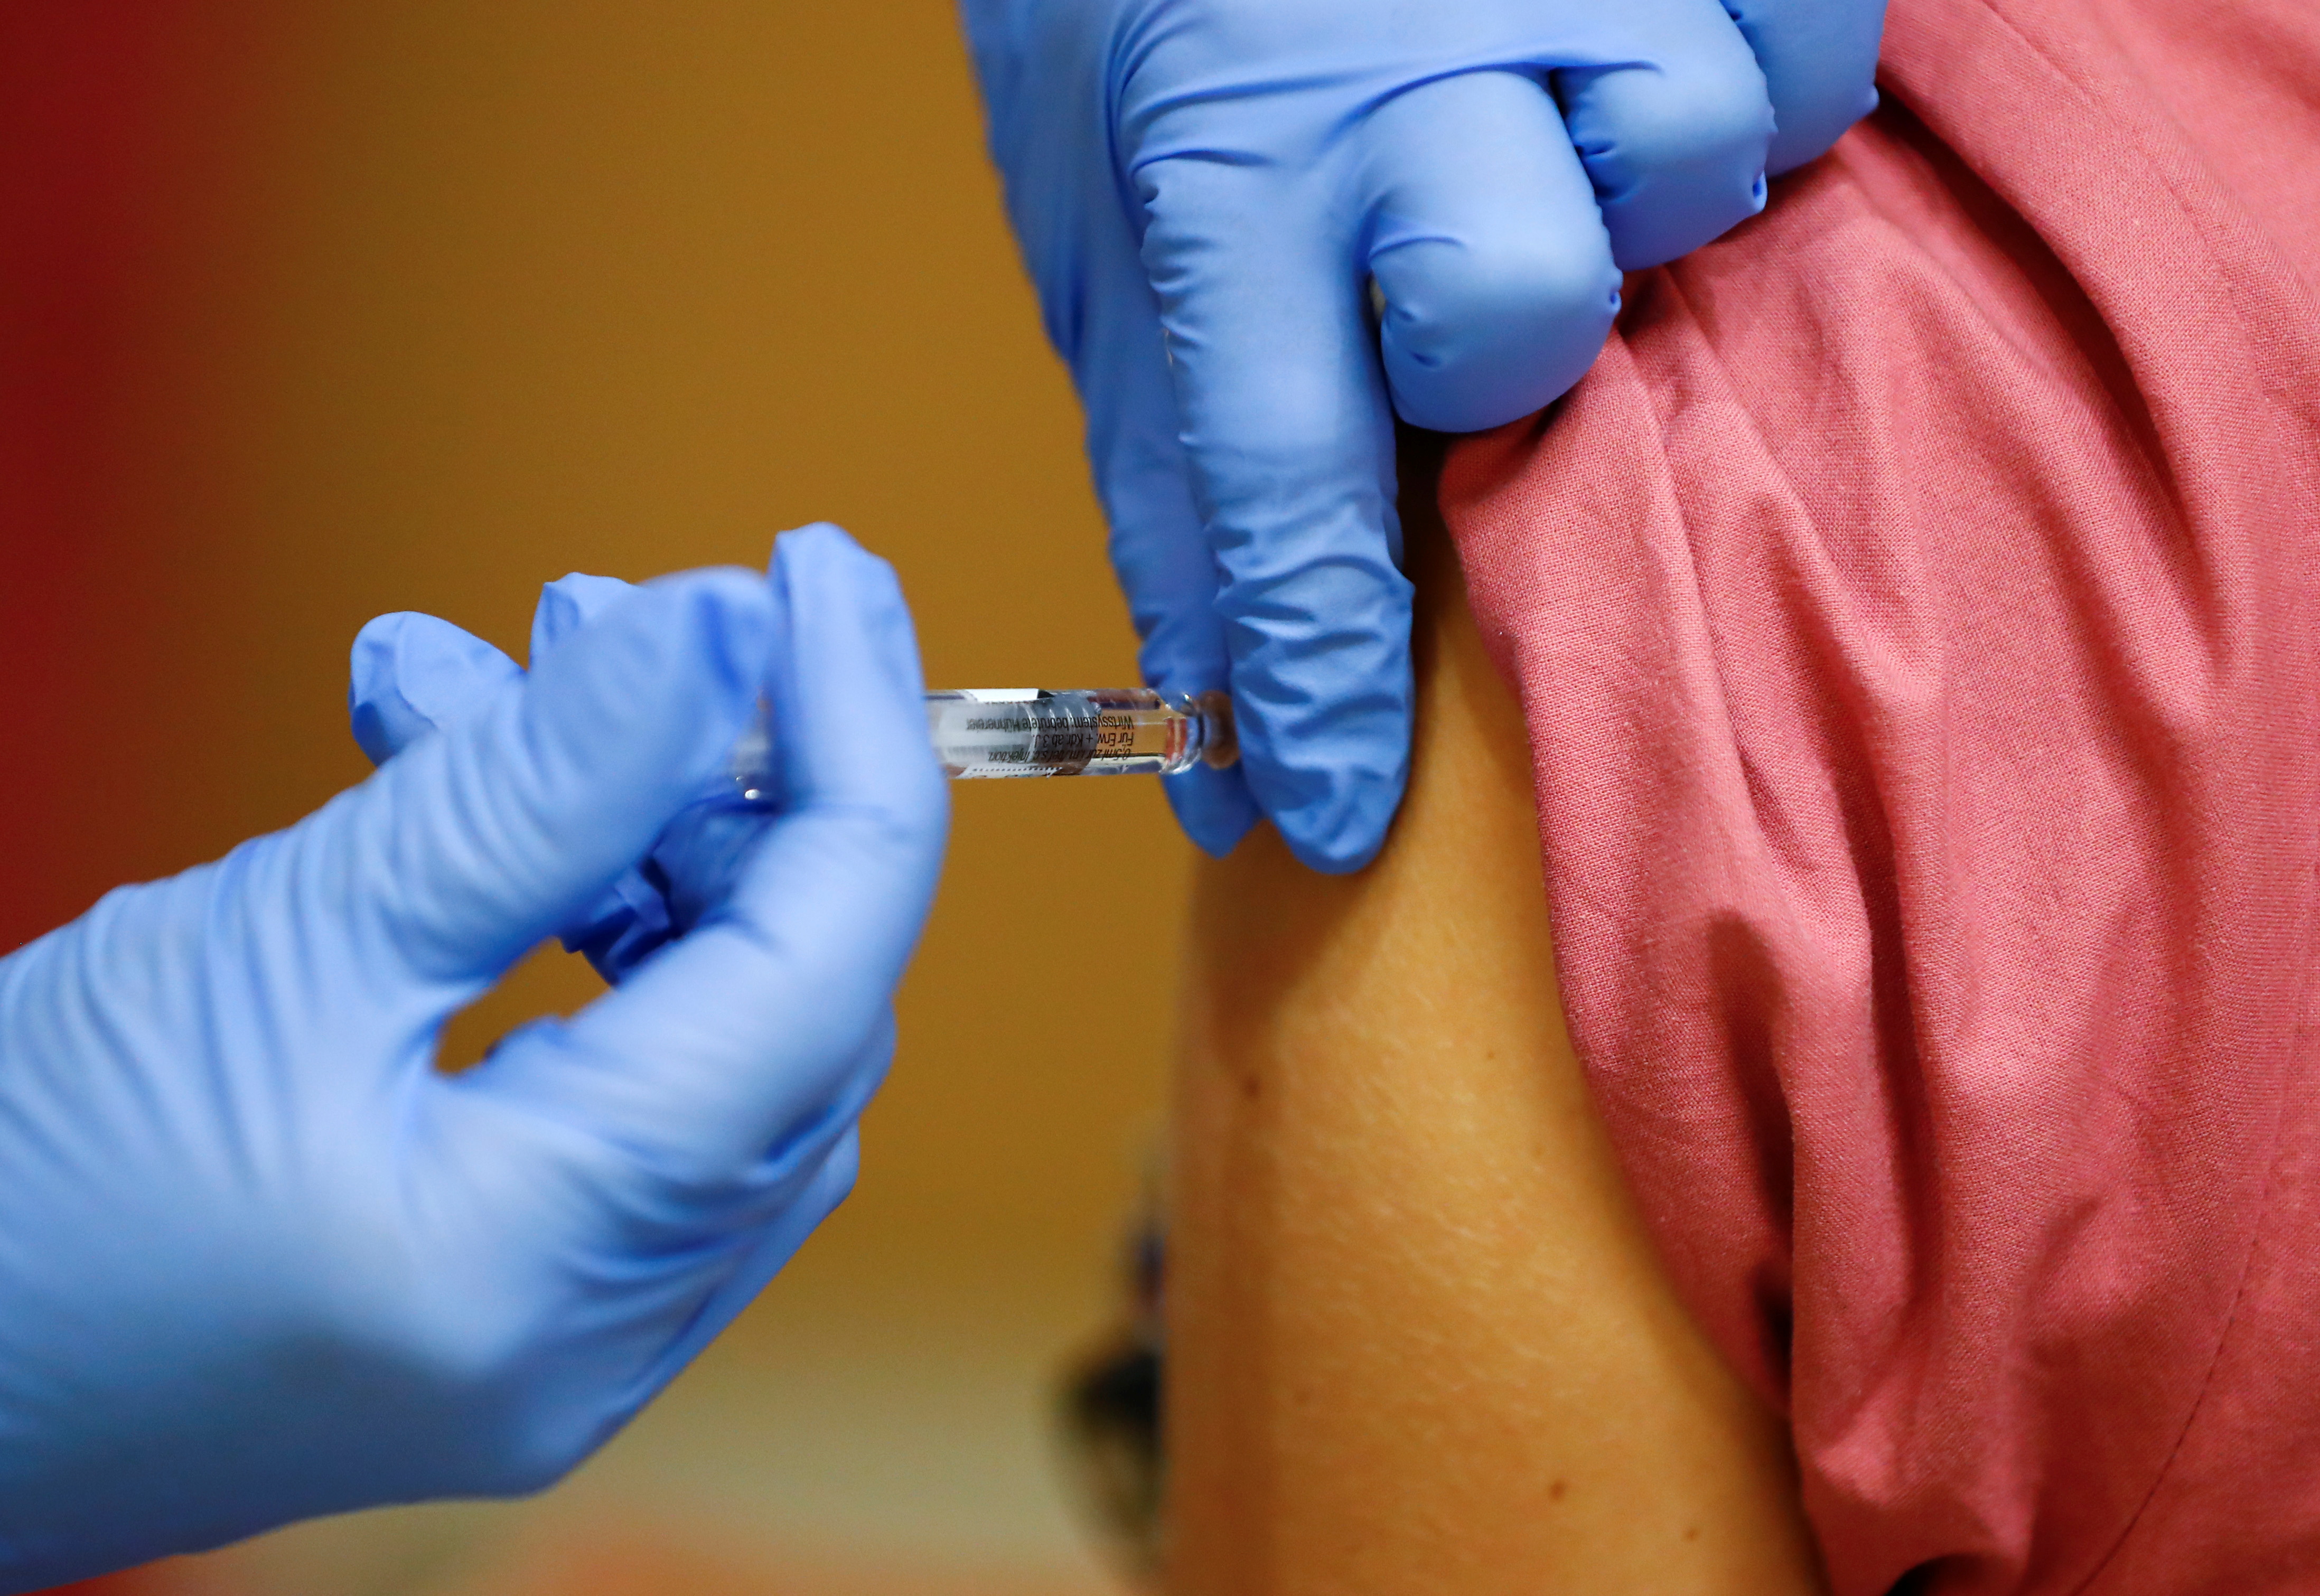 El ministro de Salud, Ginés González García, garantizó que las vacunas contra el coronavirus que se traerán al país habrán pasado “todas las pruebas de eficiencia y seguridad” (REUTERS)